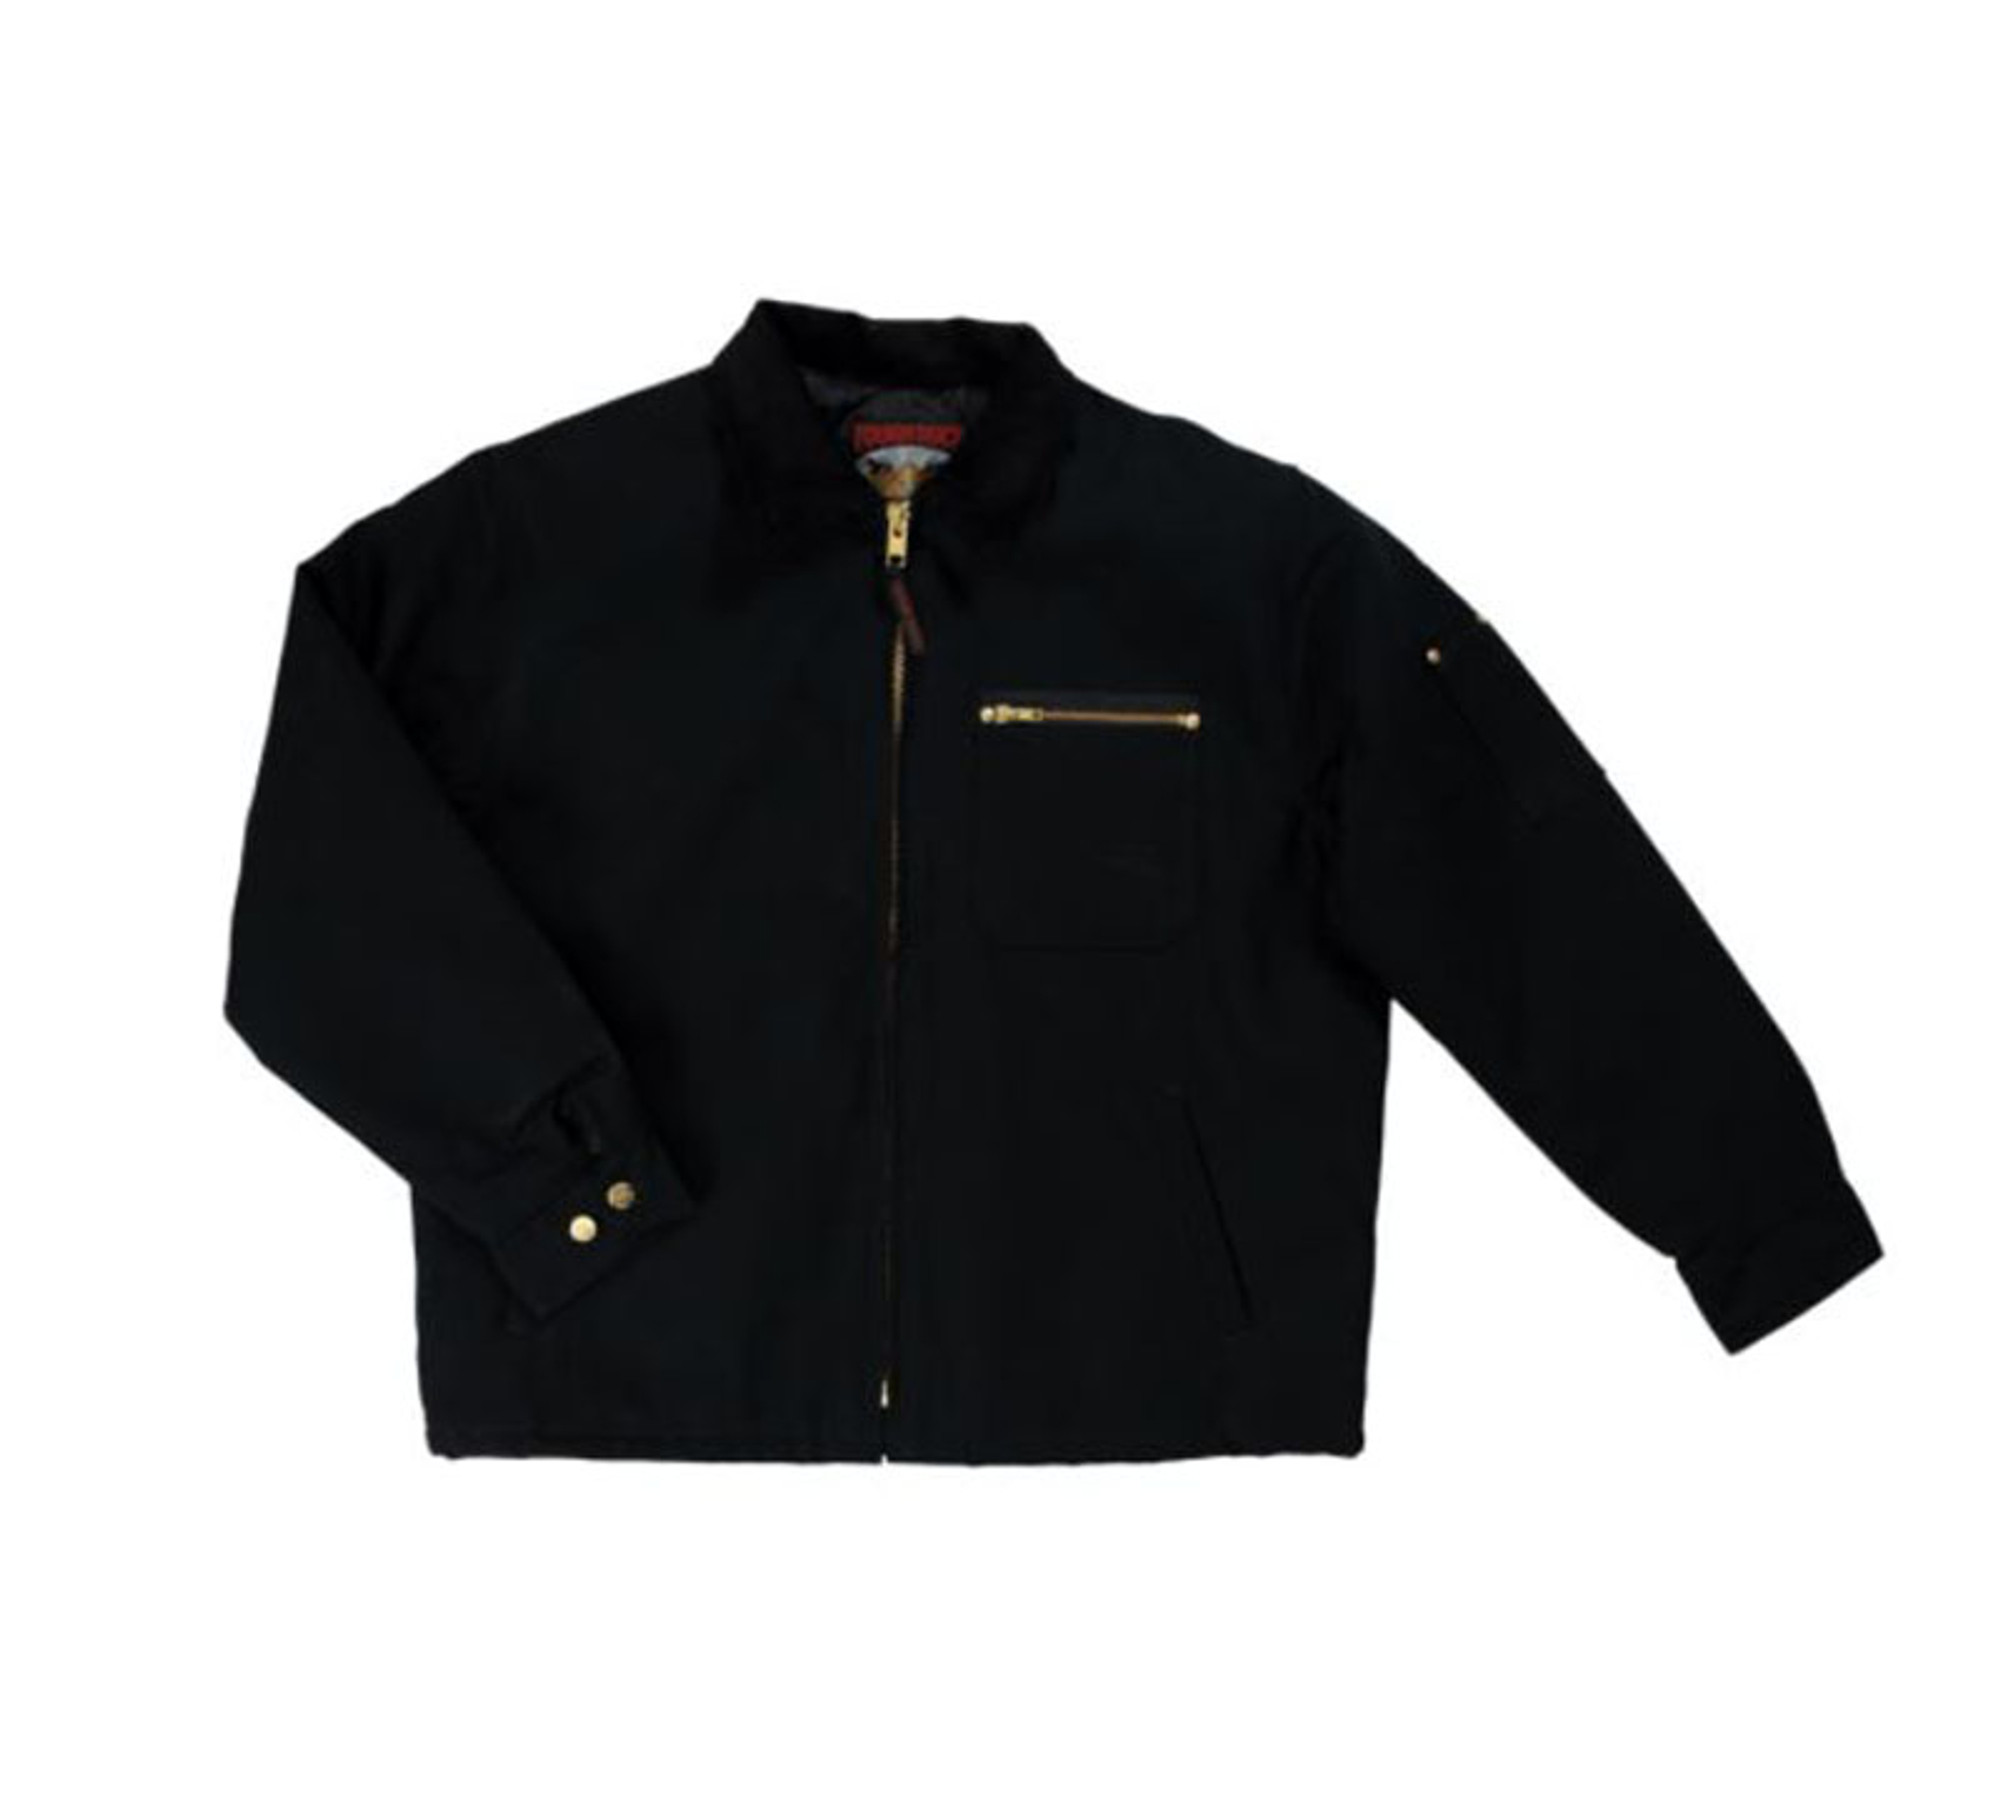 Chore Jacket (Black)